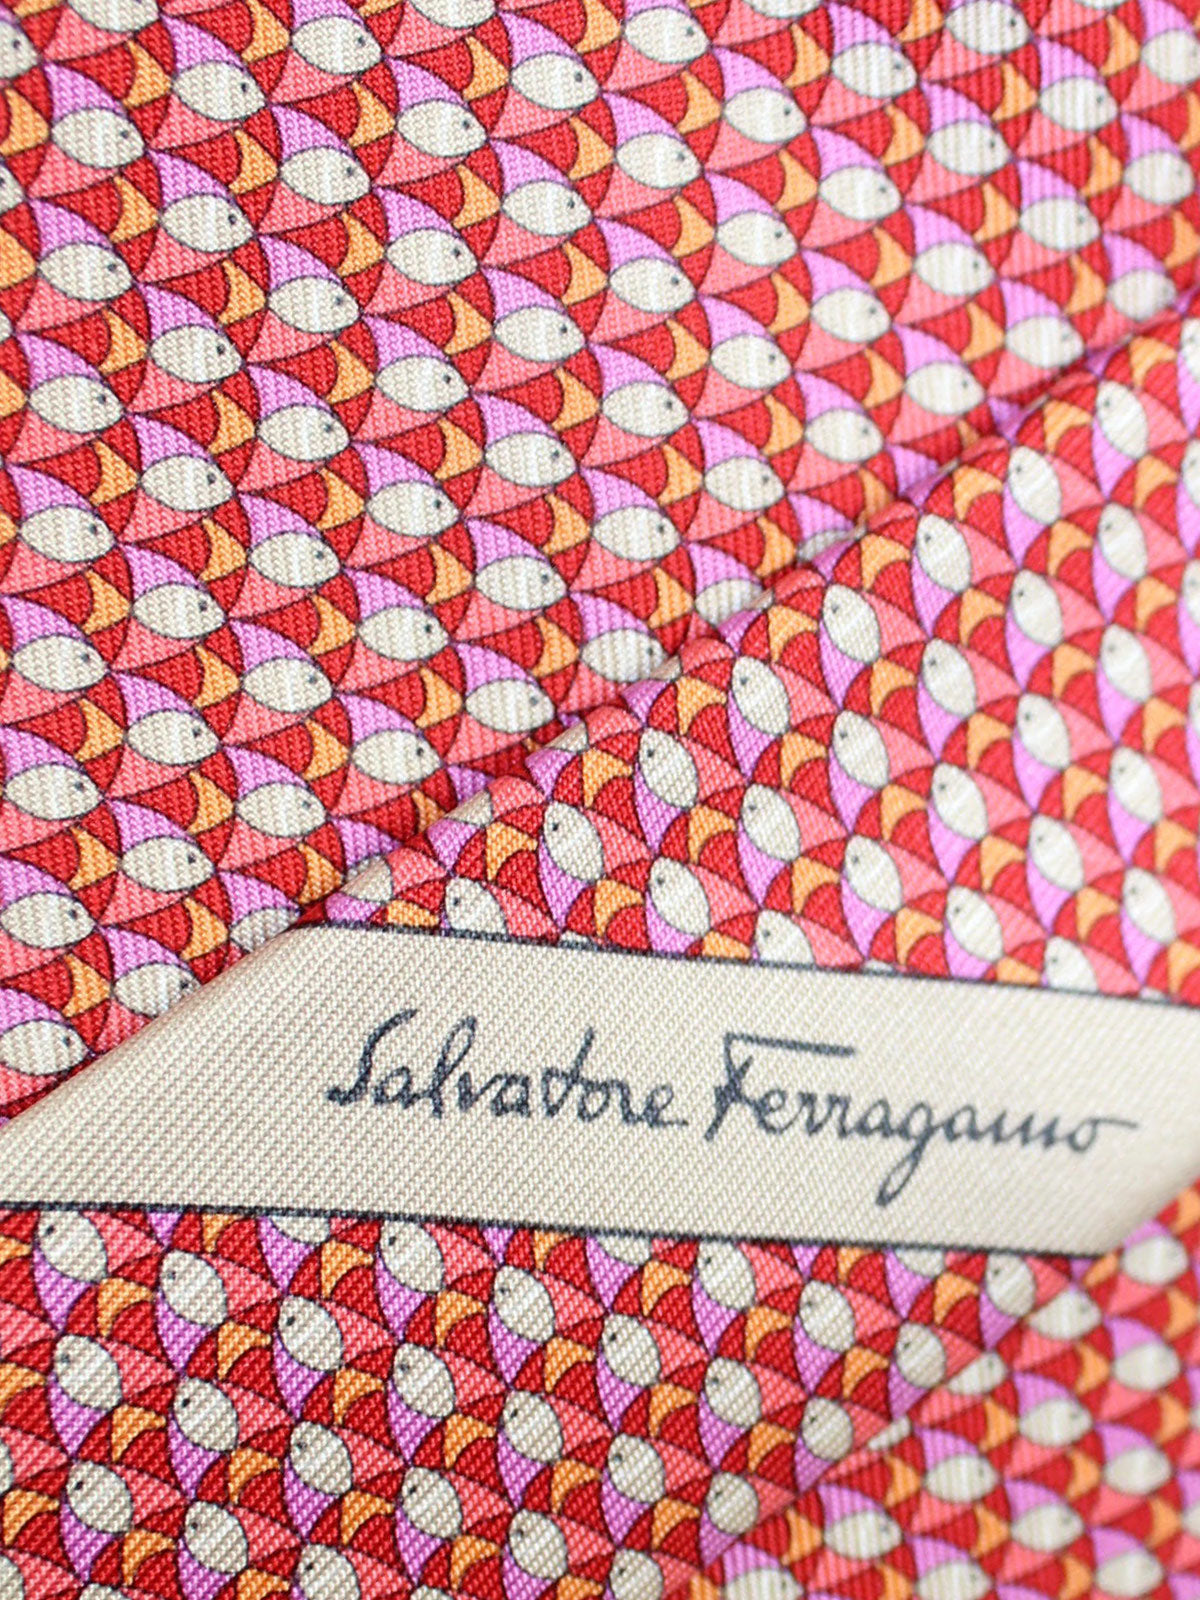 Salvatore Ferragamo Silk Tie Pink Orange Fish Novelty